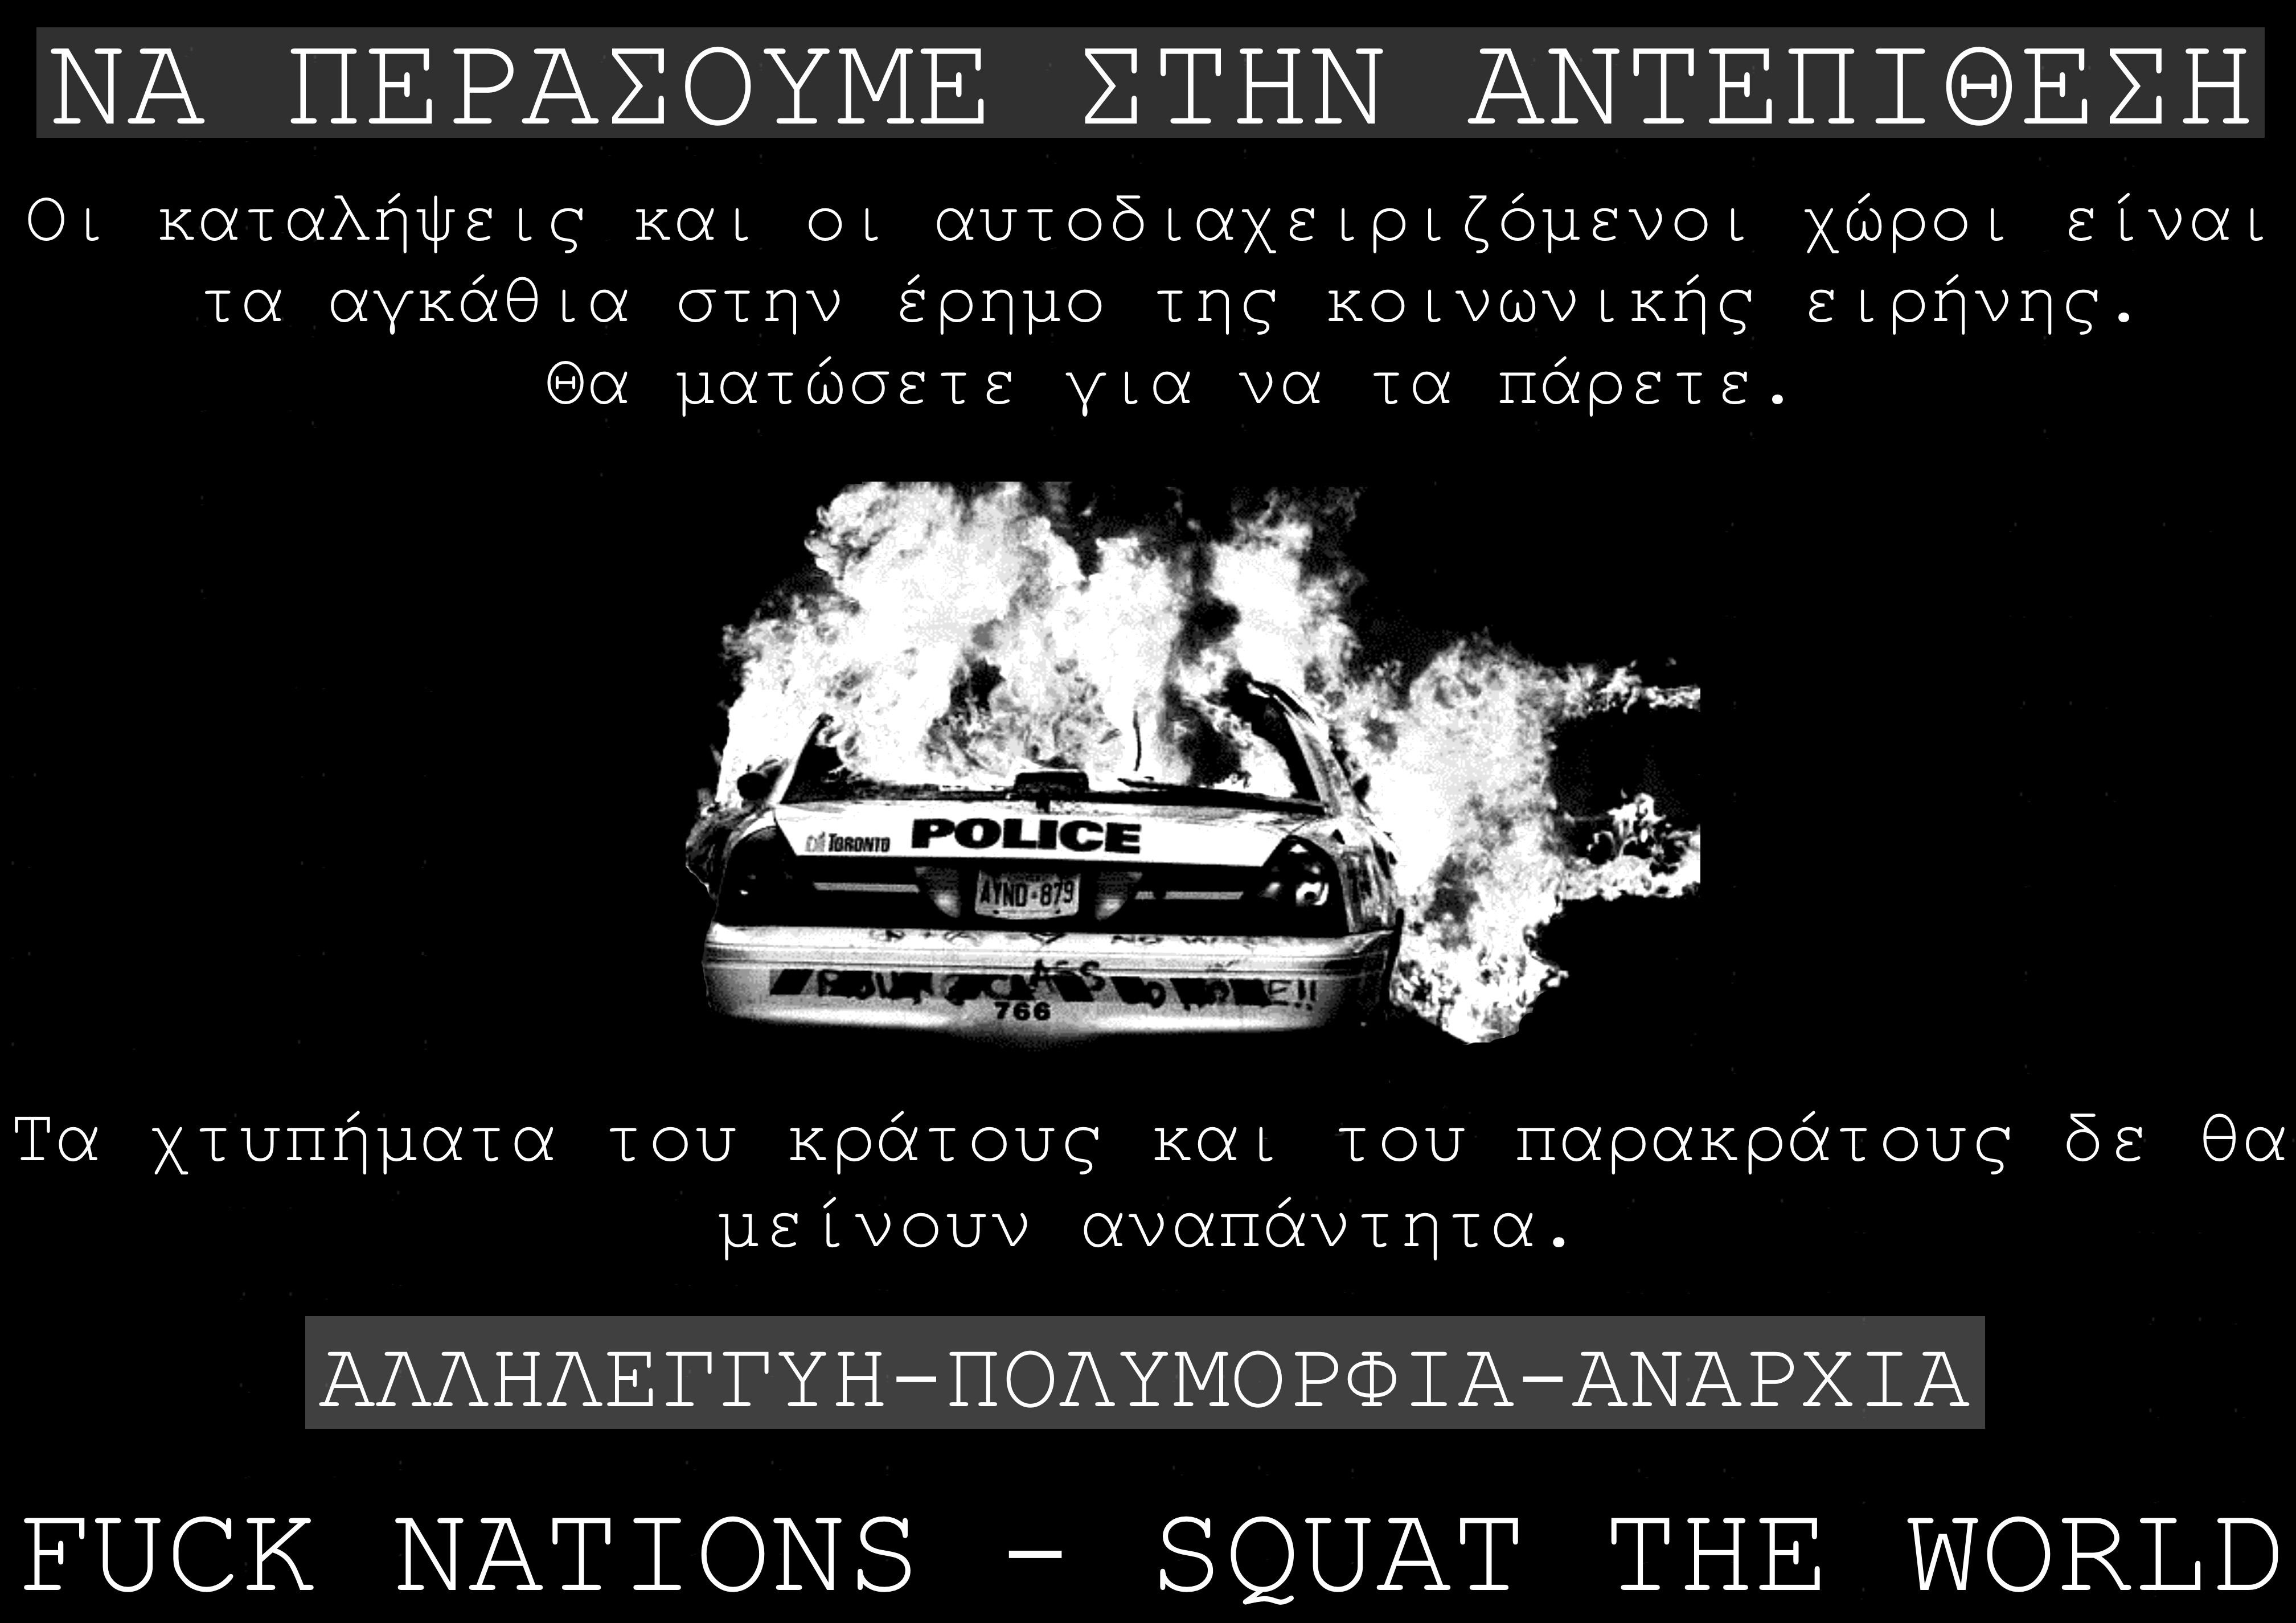 Αφίσα/στίκερ για το κάλεσμα Fuck Nations – Squat the world